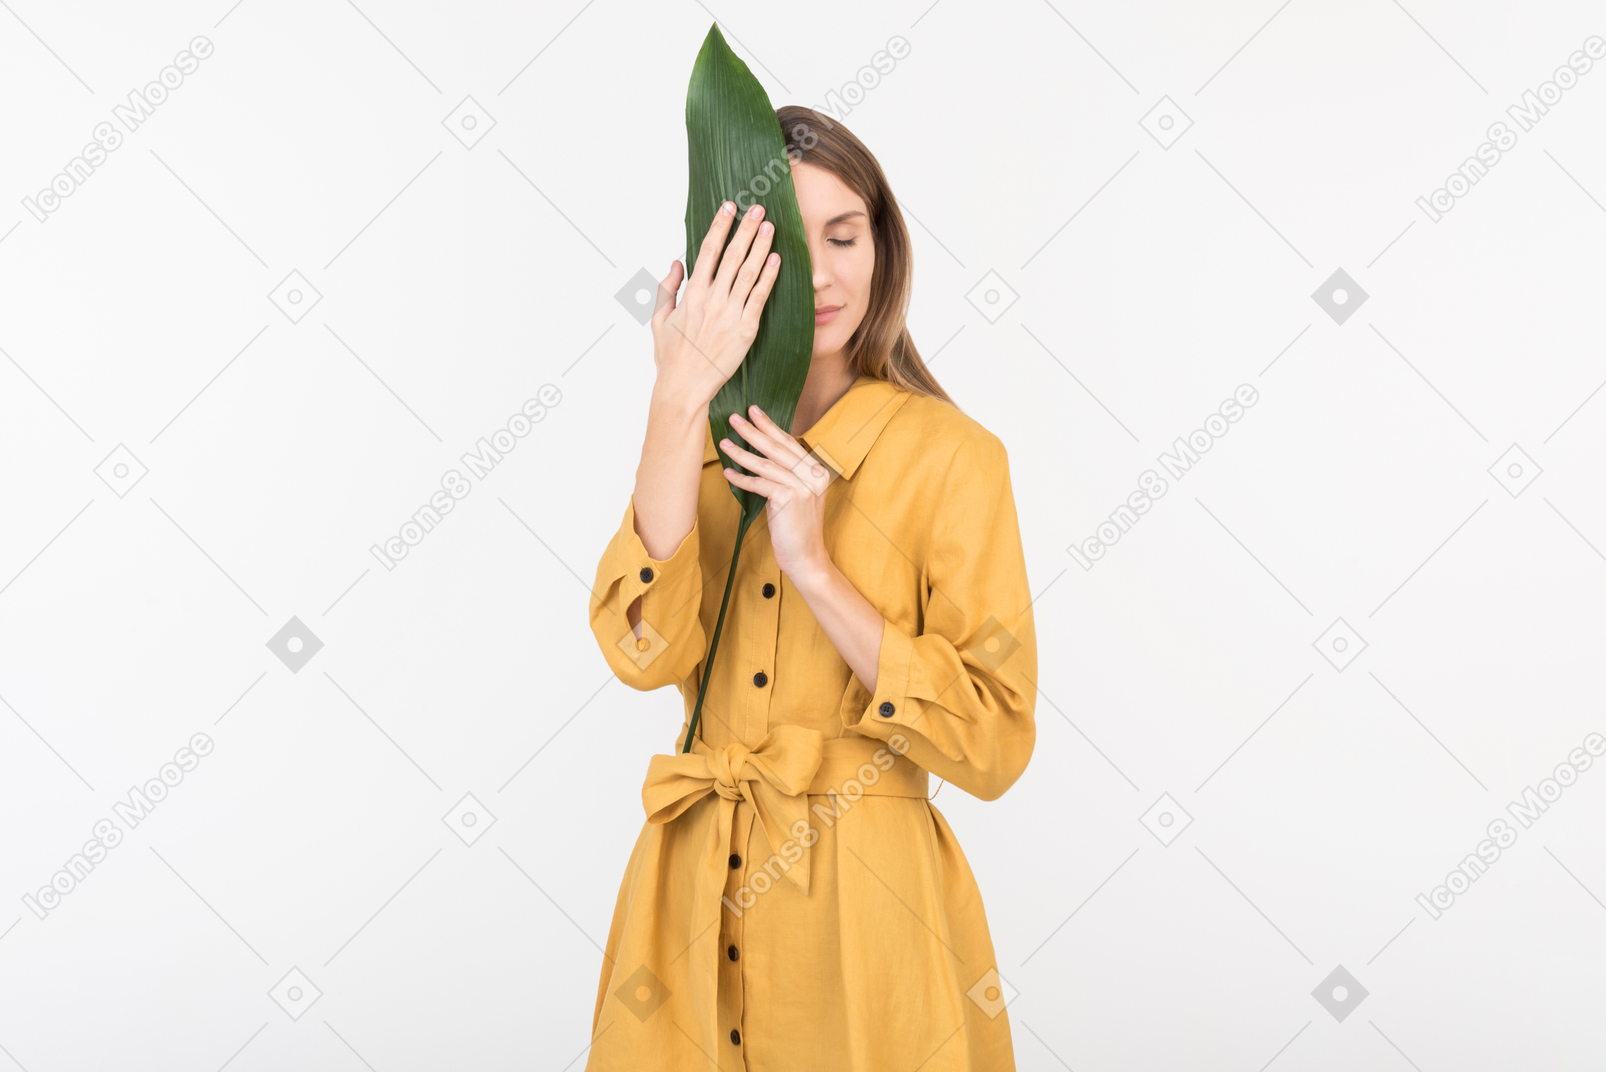 Giovane donna chiudendo il viso con una foglia verde con gli occhi chiusi